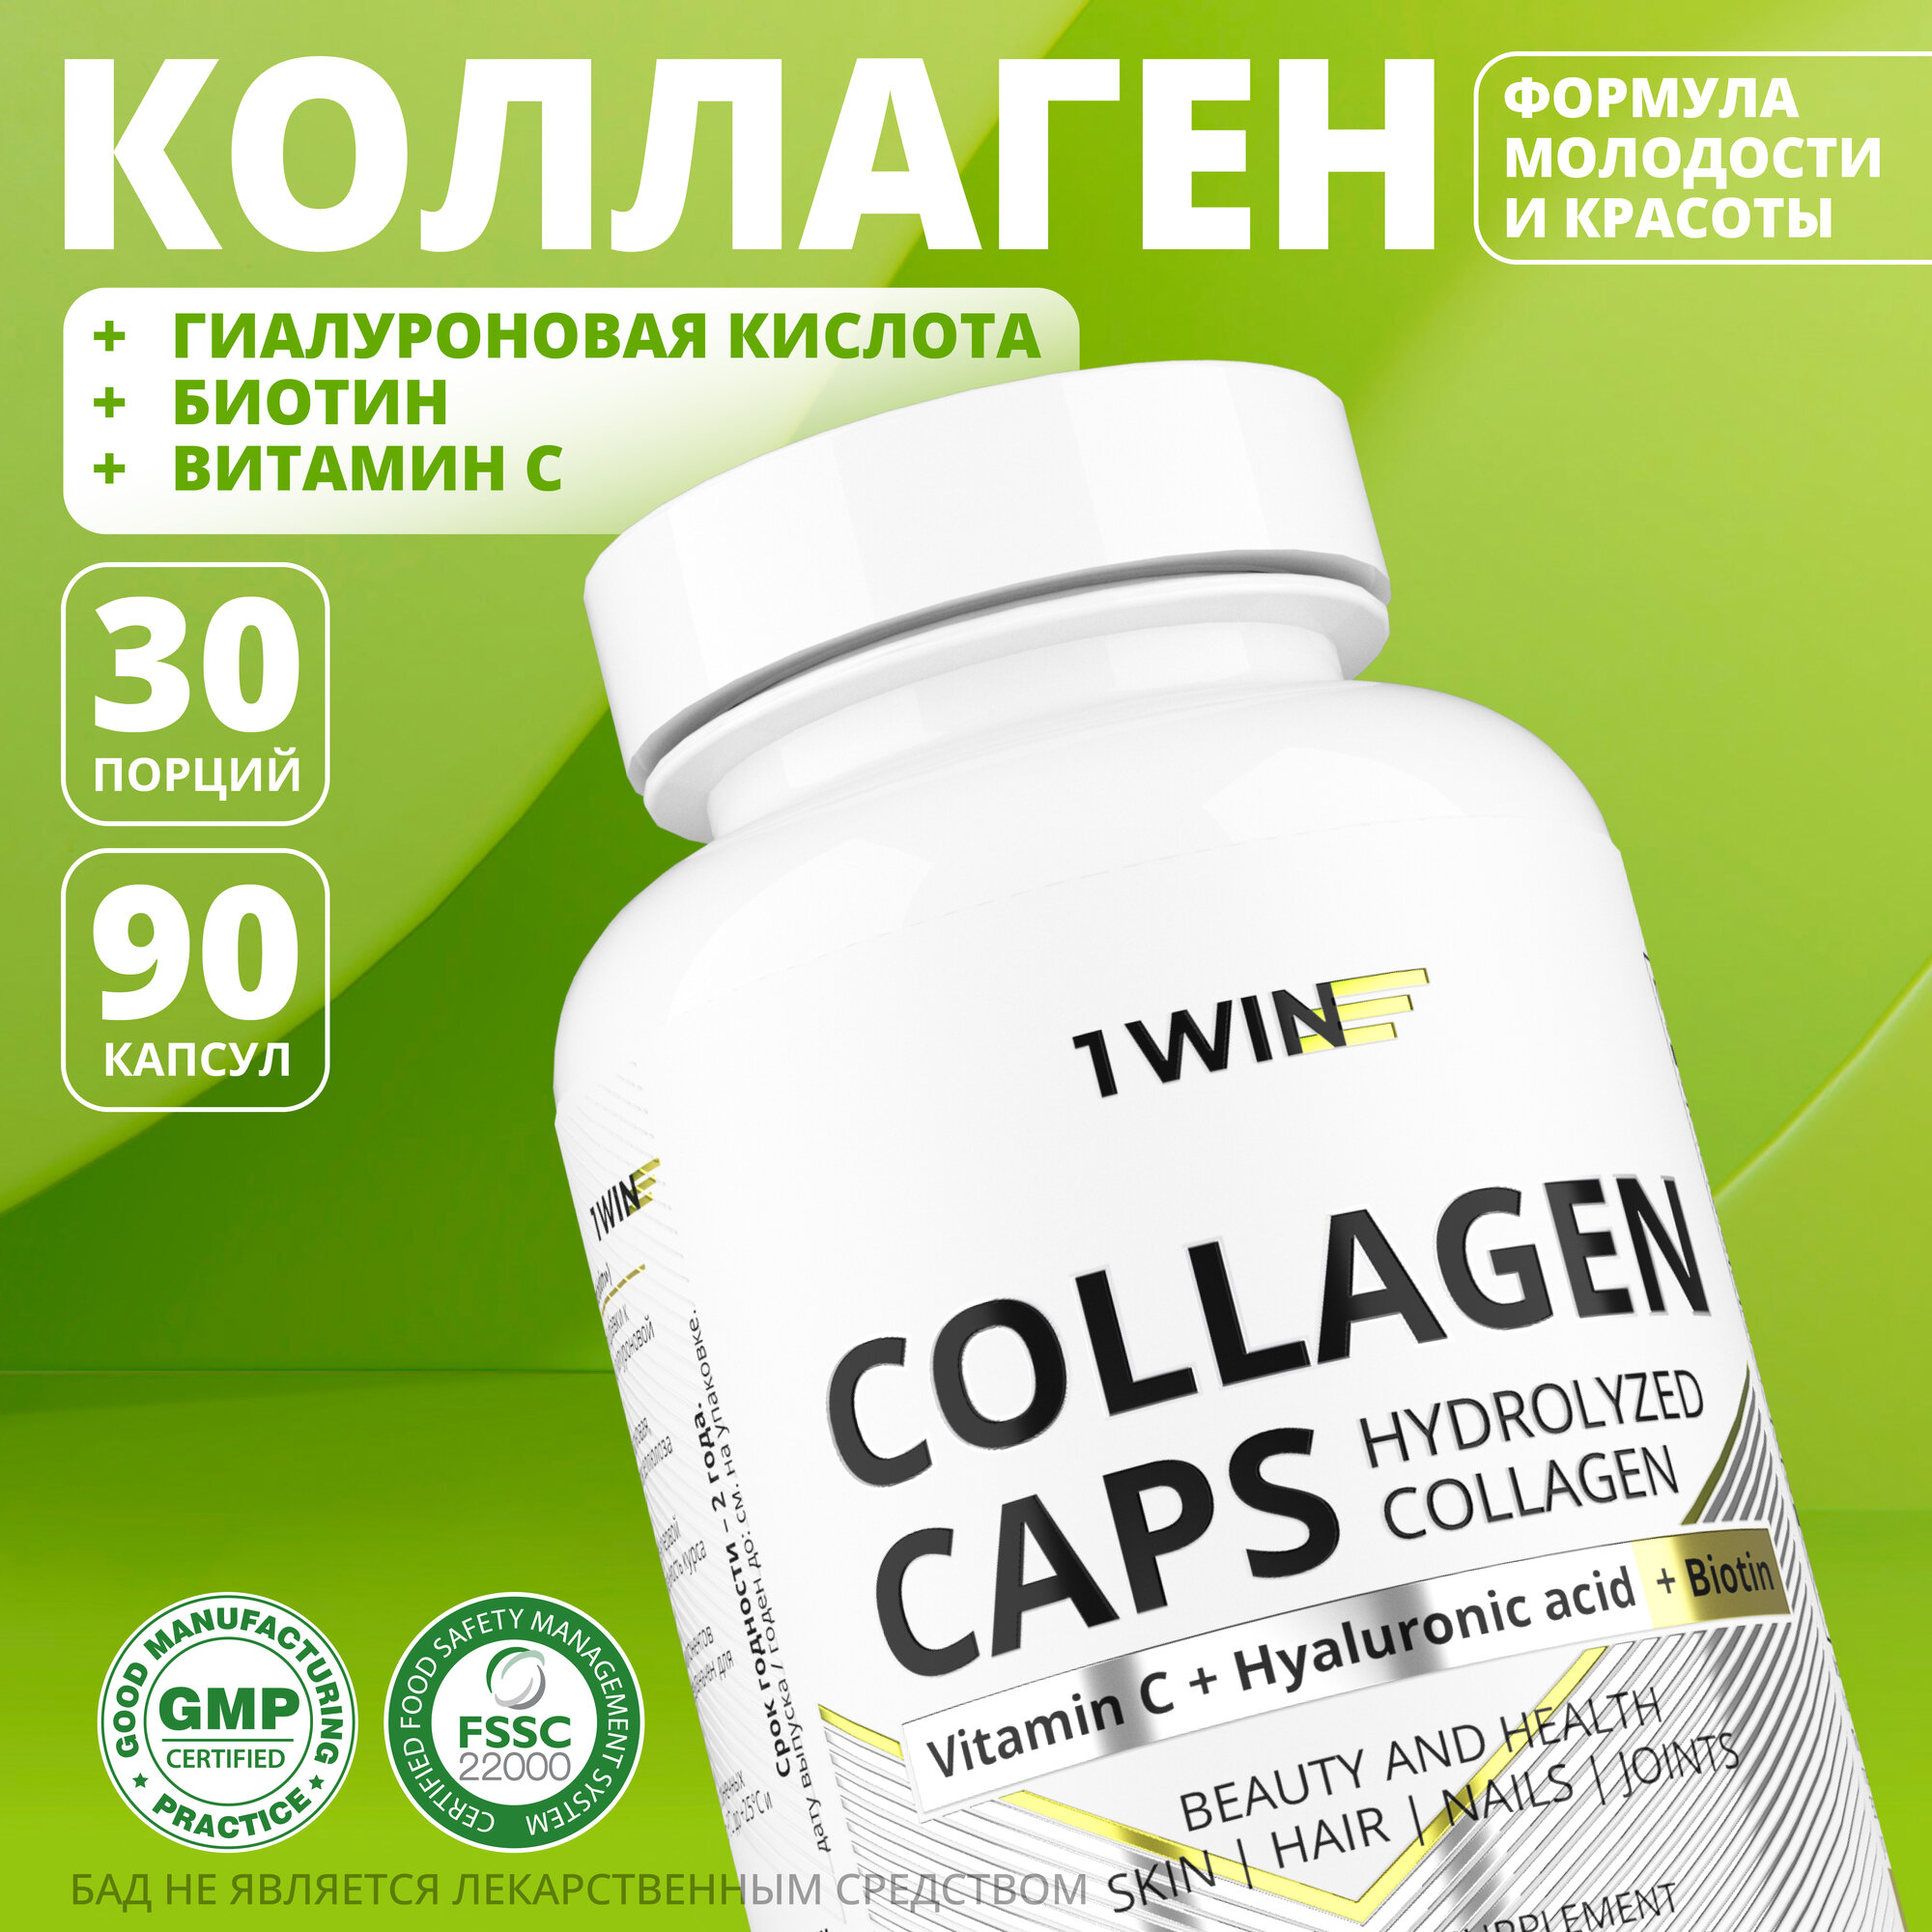 1WIN Коллаген с витамином С, гиалуроновой кислотой и биотином в капсулах.